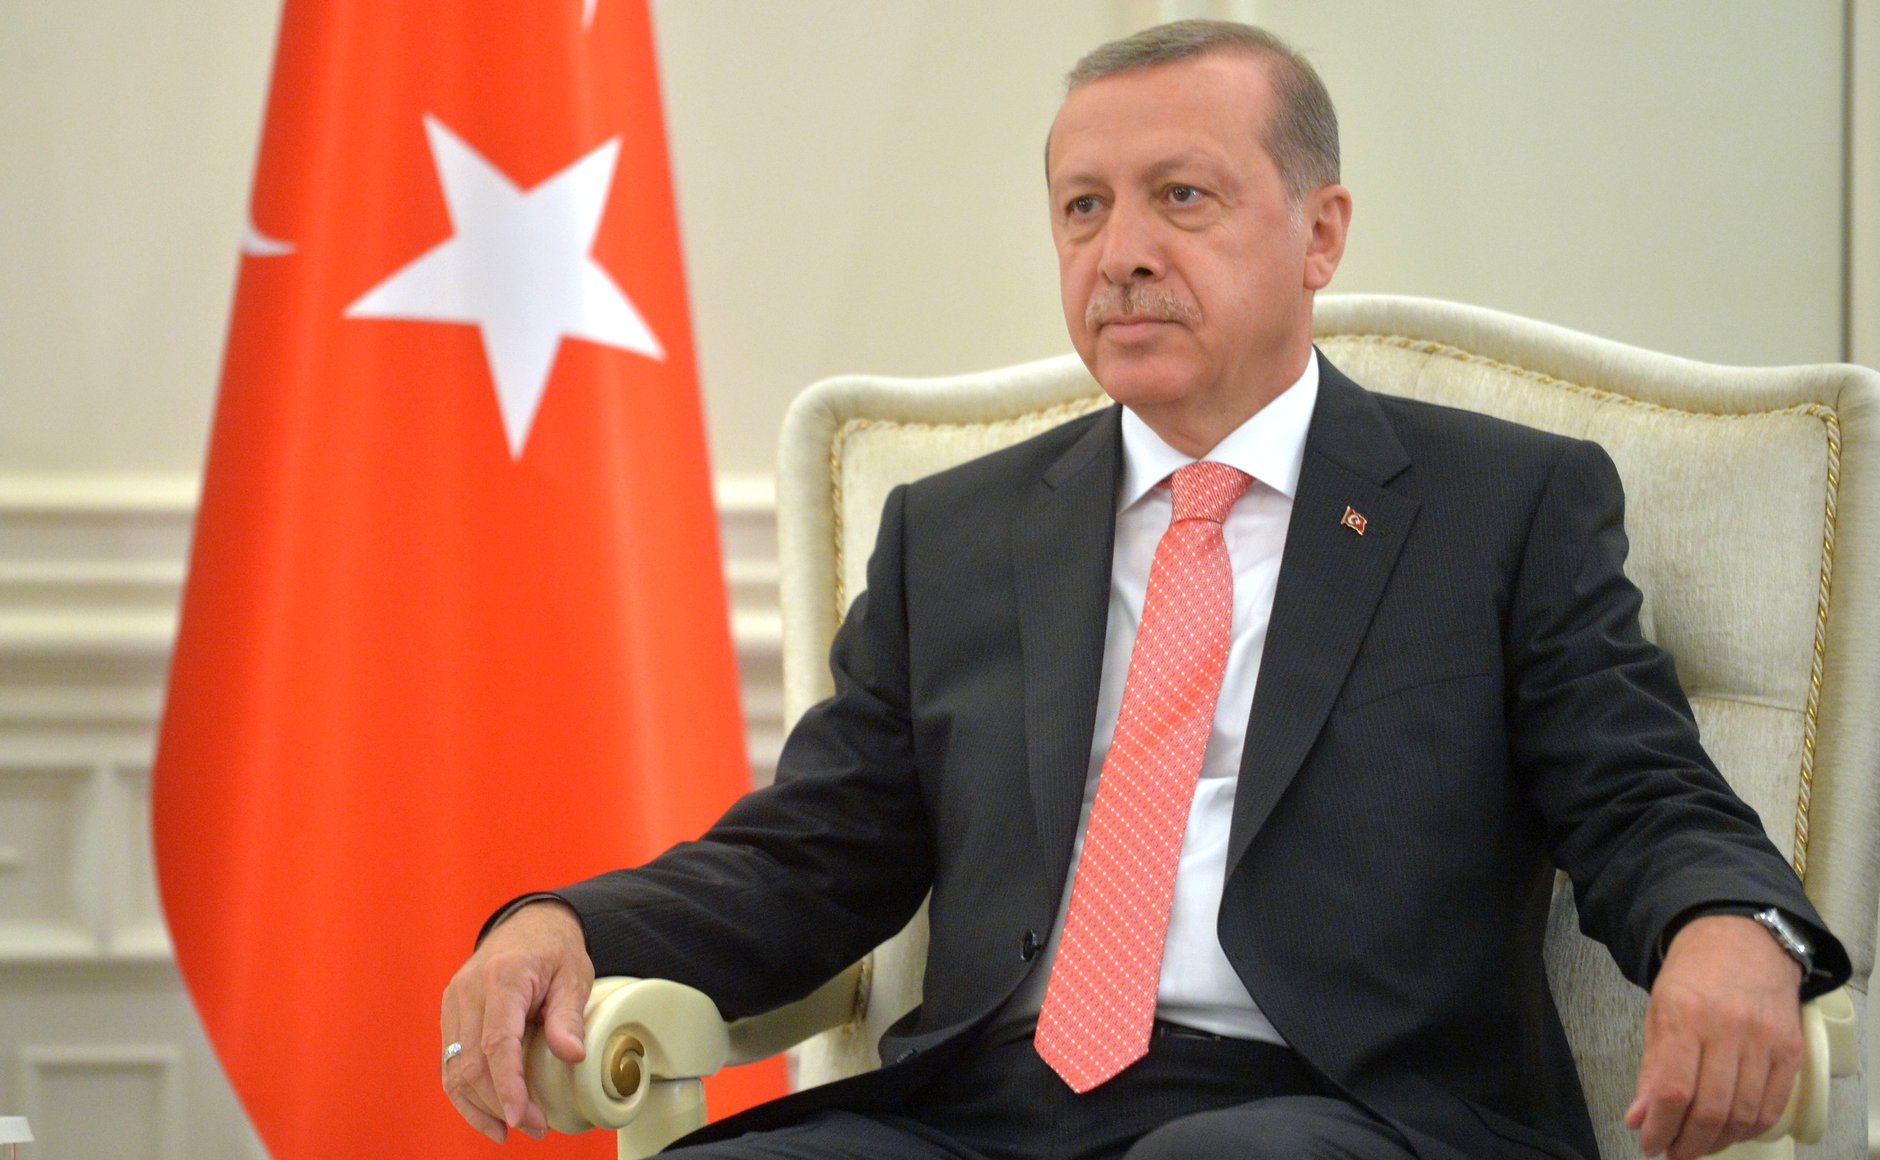 Erdogan Wins Turkey’s Presidential Runoff